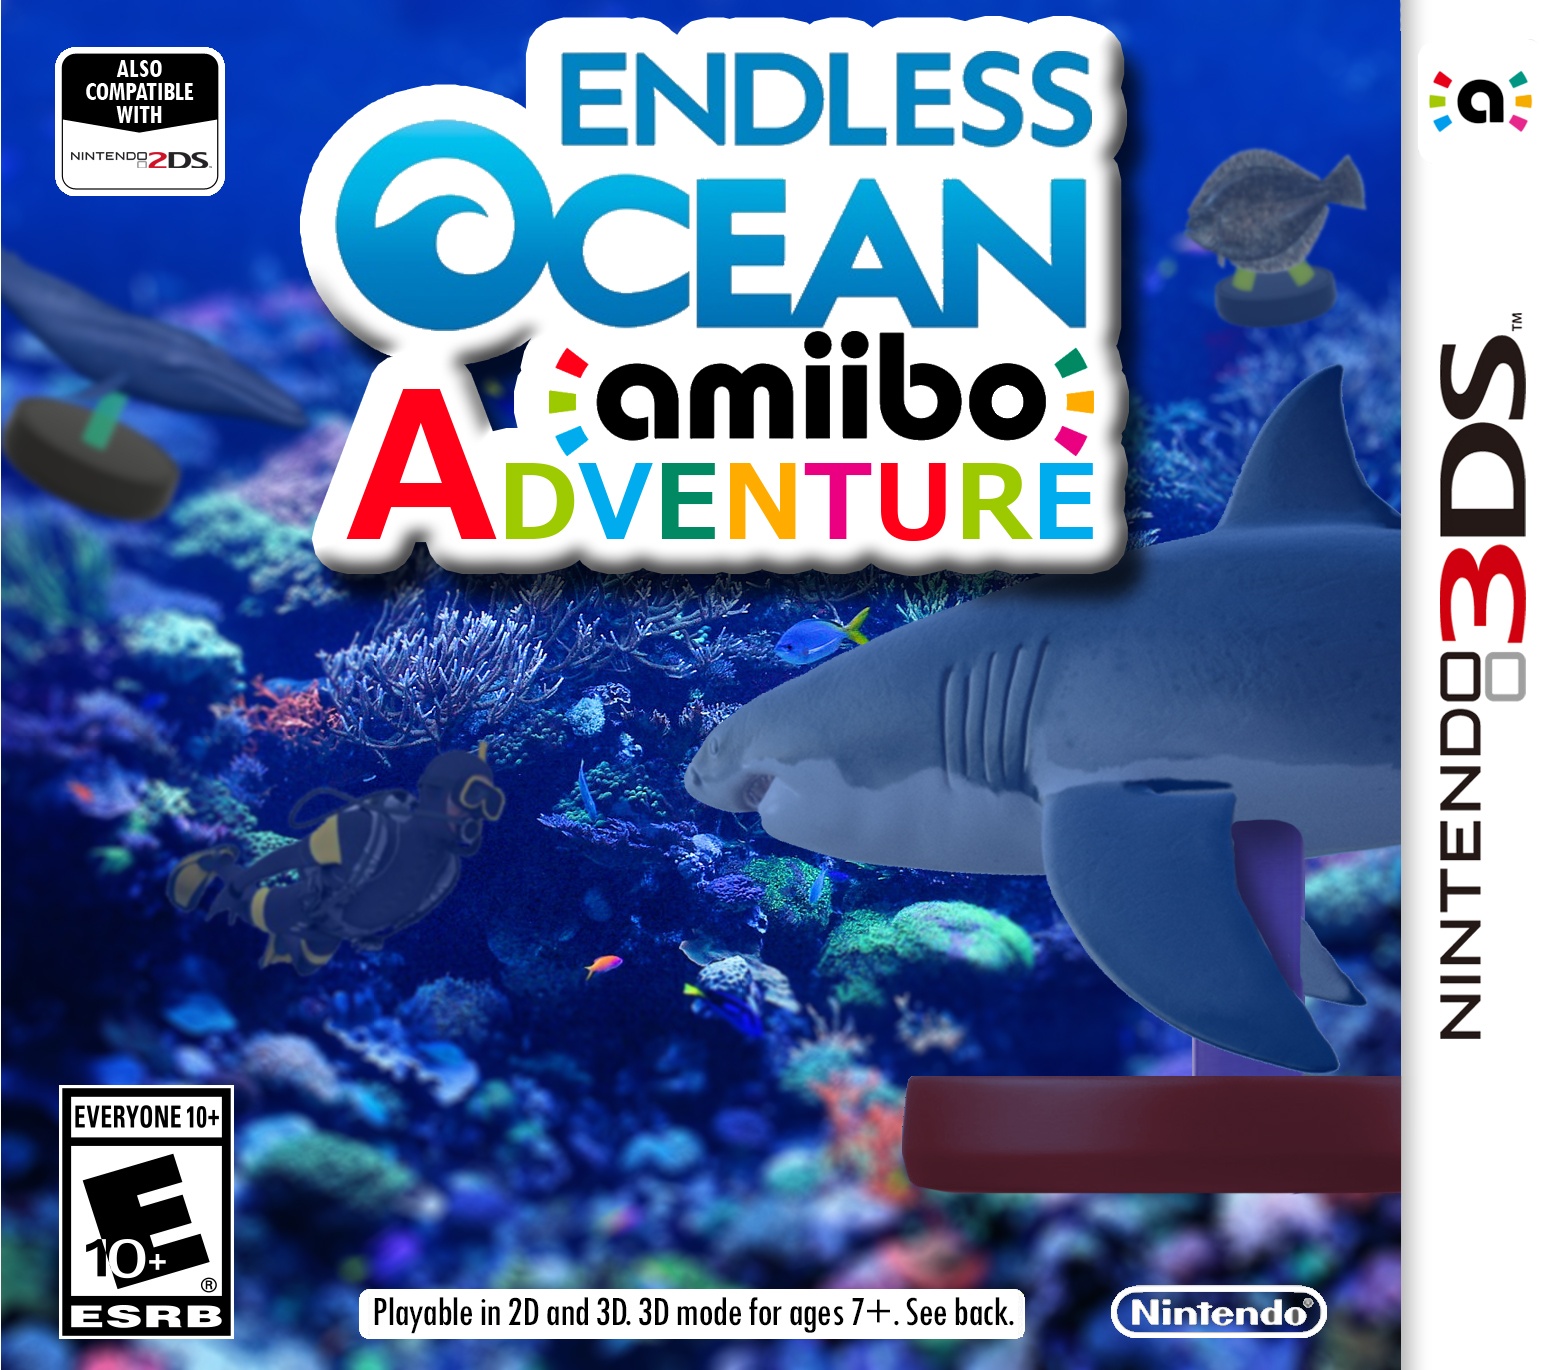 Endless Ocean Amiibo Adventure box cover